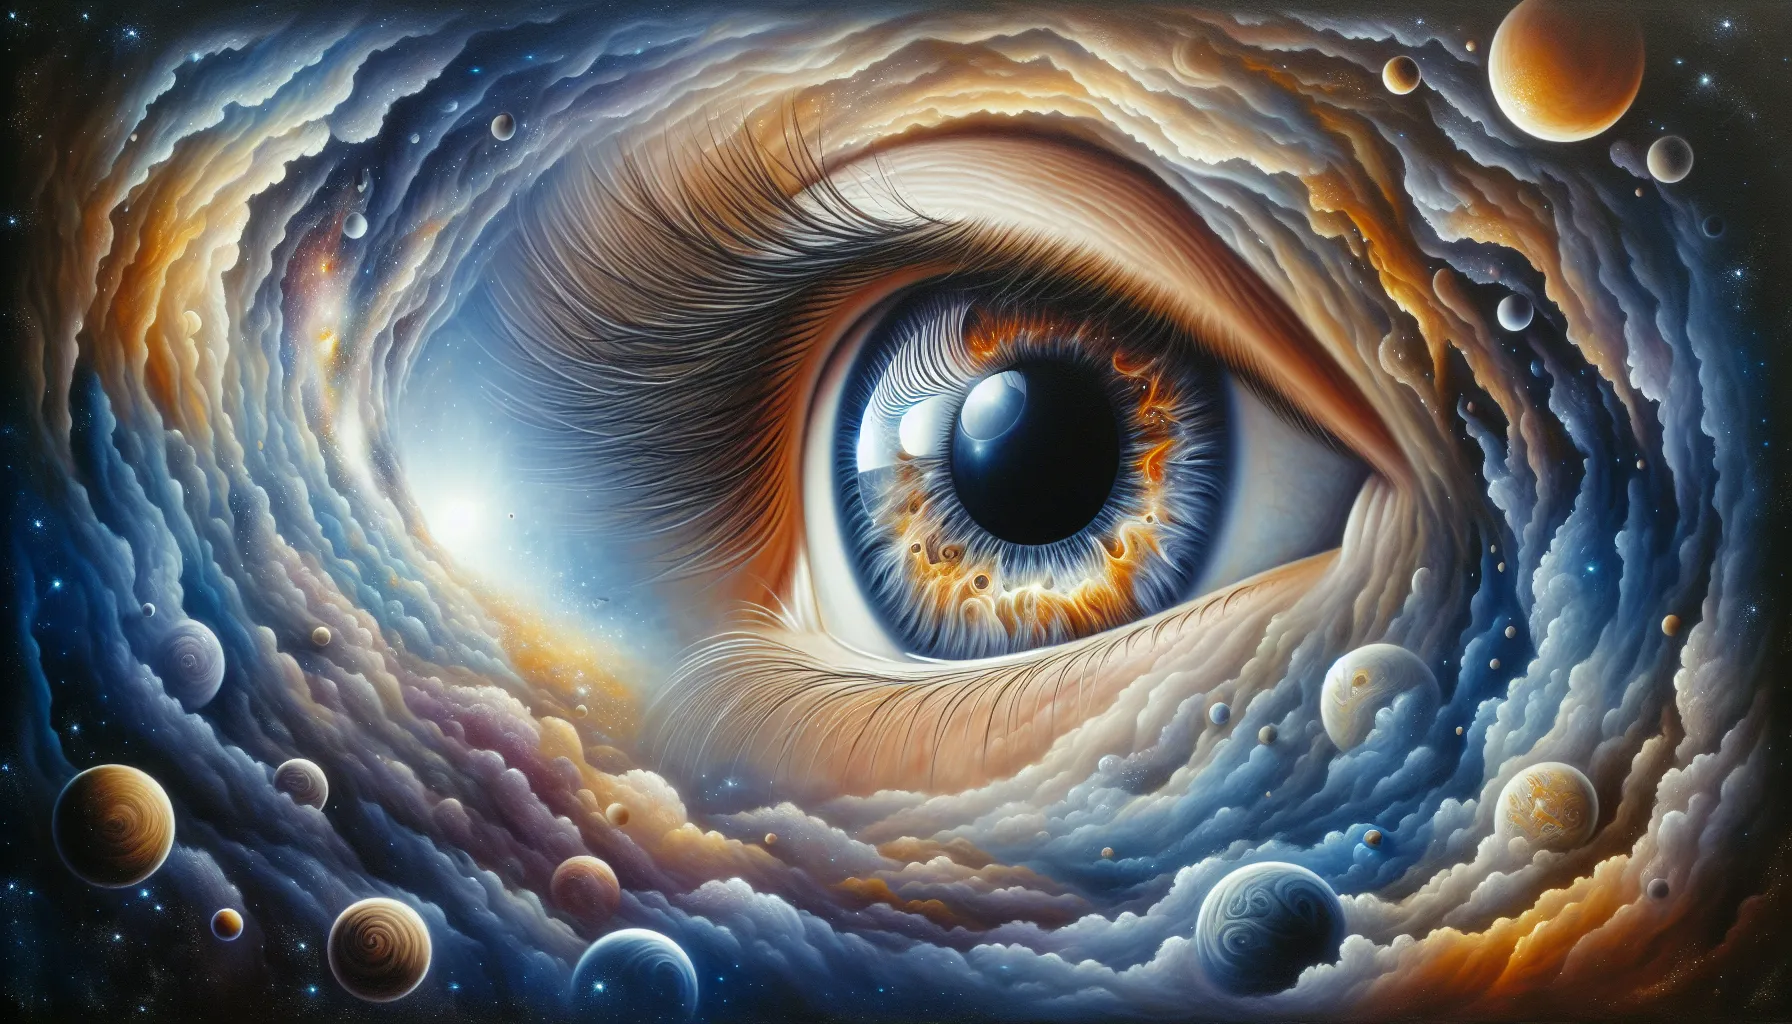 La imagen muestra una representación artística de un ojo divino observando el universo, simbolizando la omnisciencia de Dios según la Biblia.